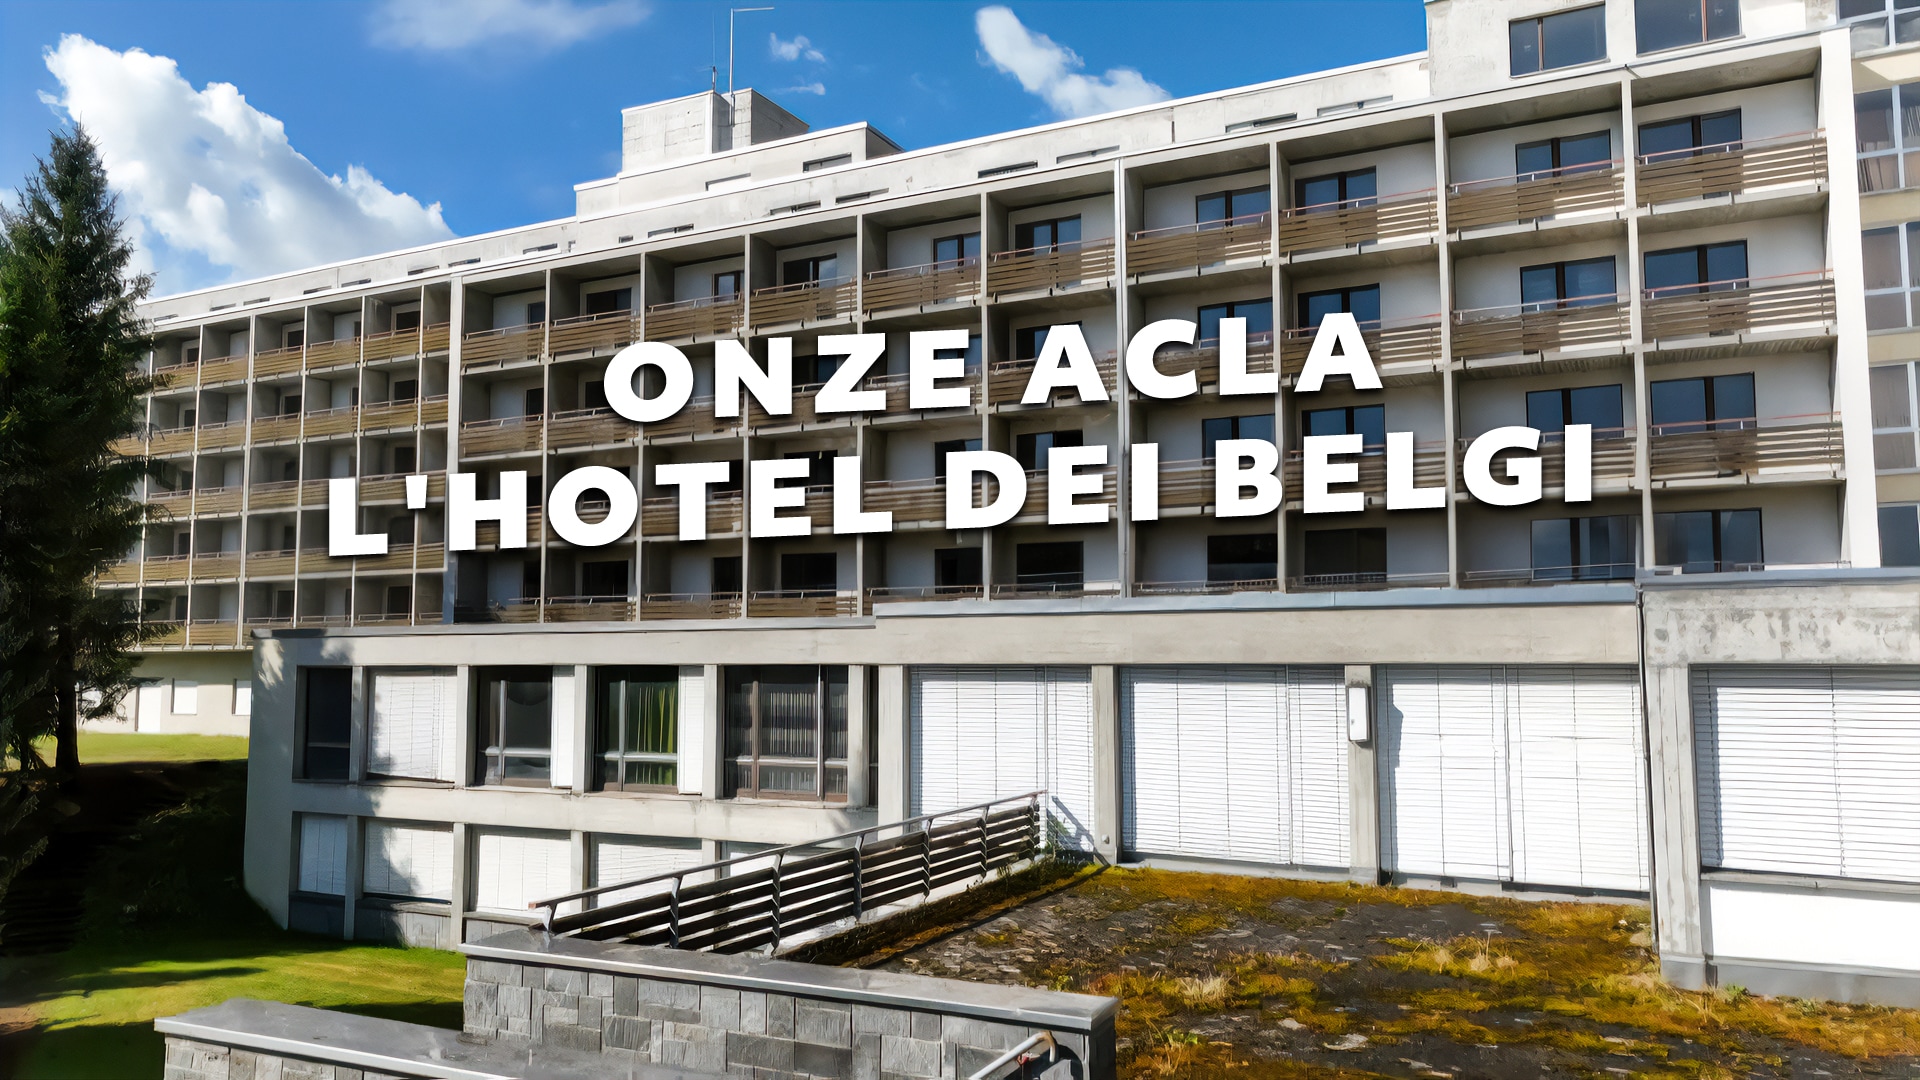 Onze Acla - L'hotel dei belgi